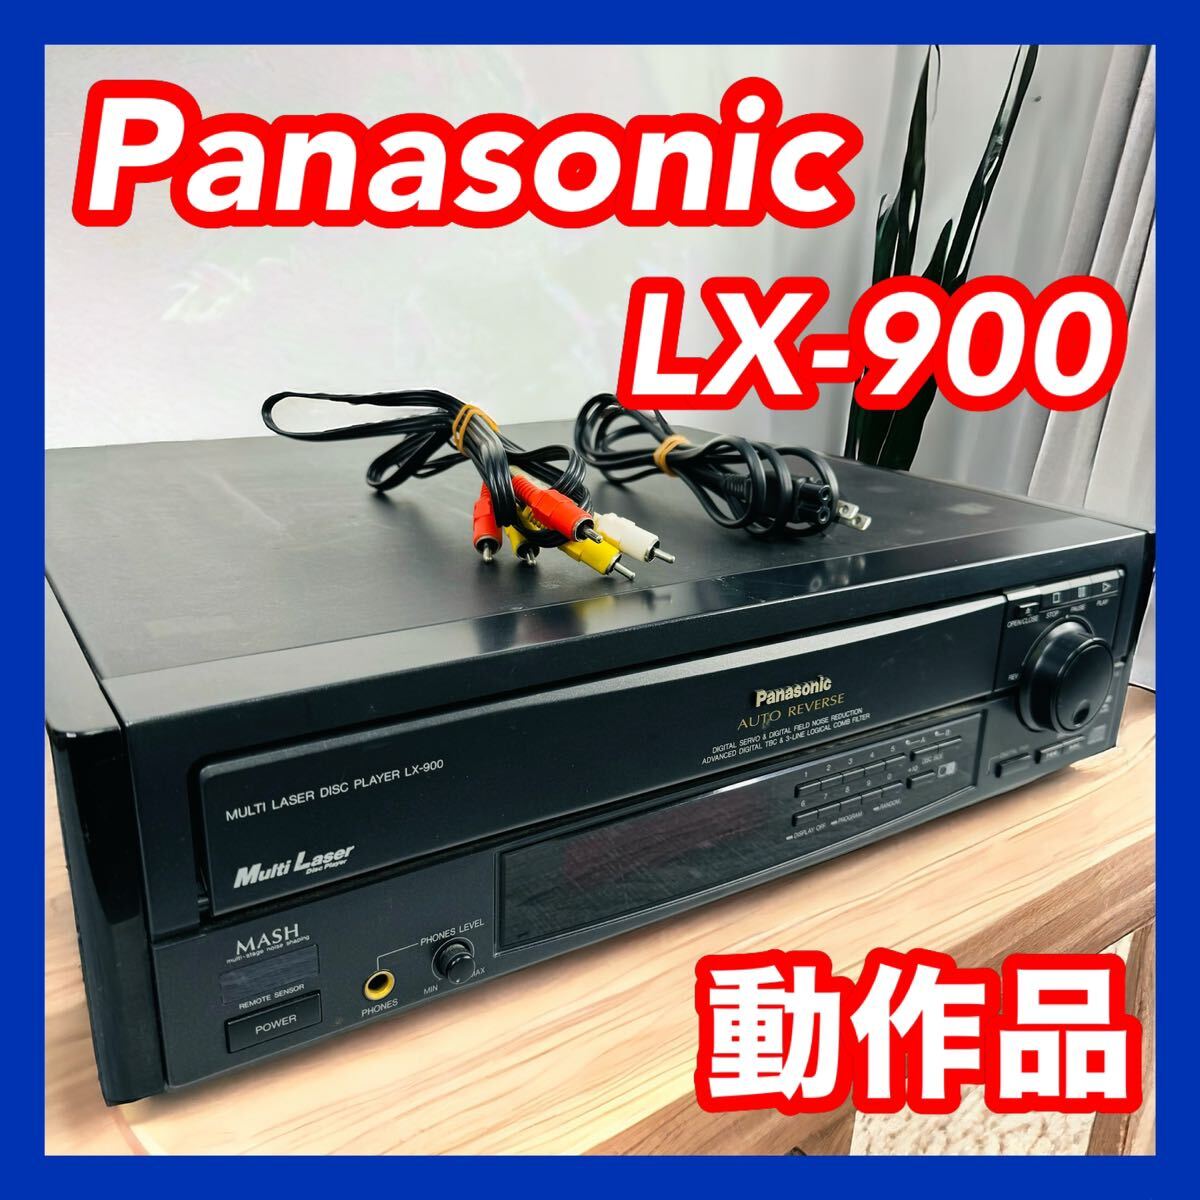 有名な高級ブランド Panasonic パナソニック LX-900 LDプレーヤー 最